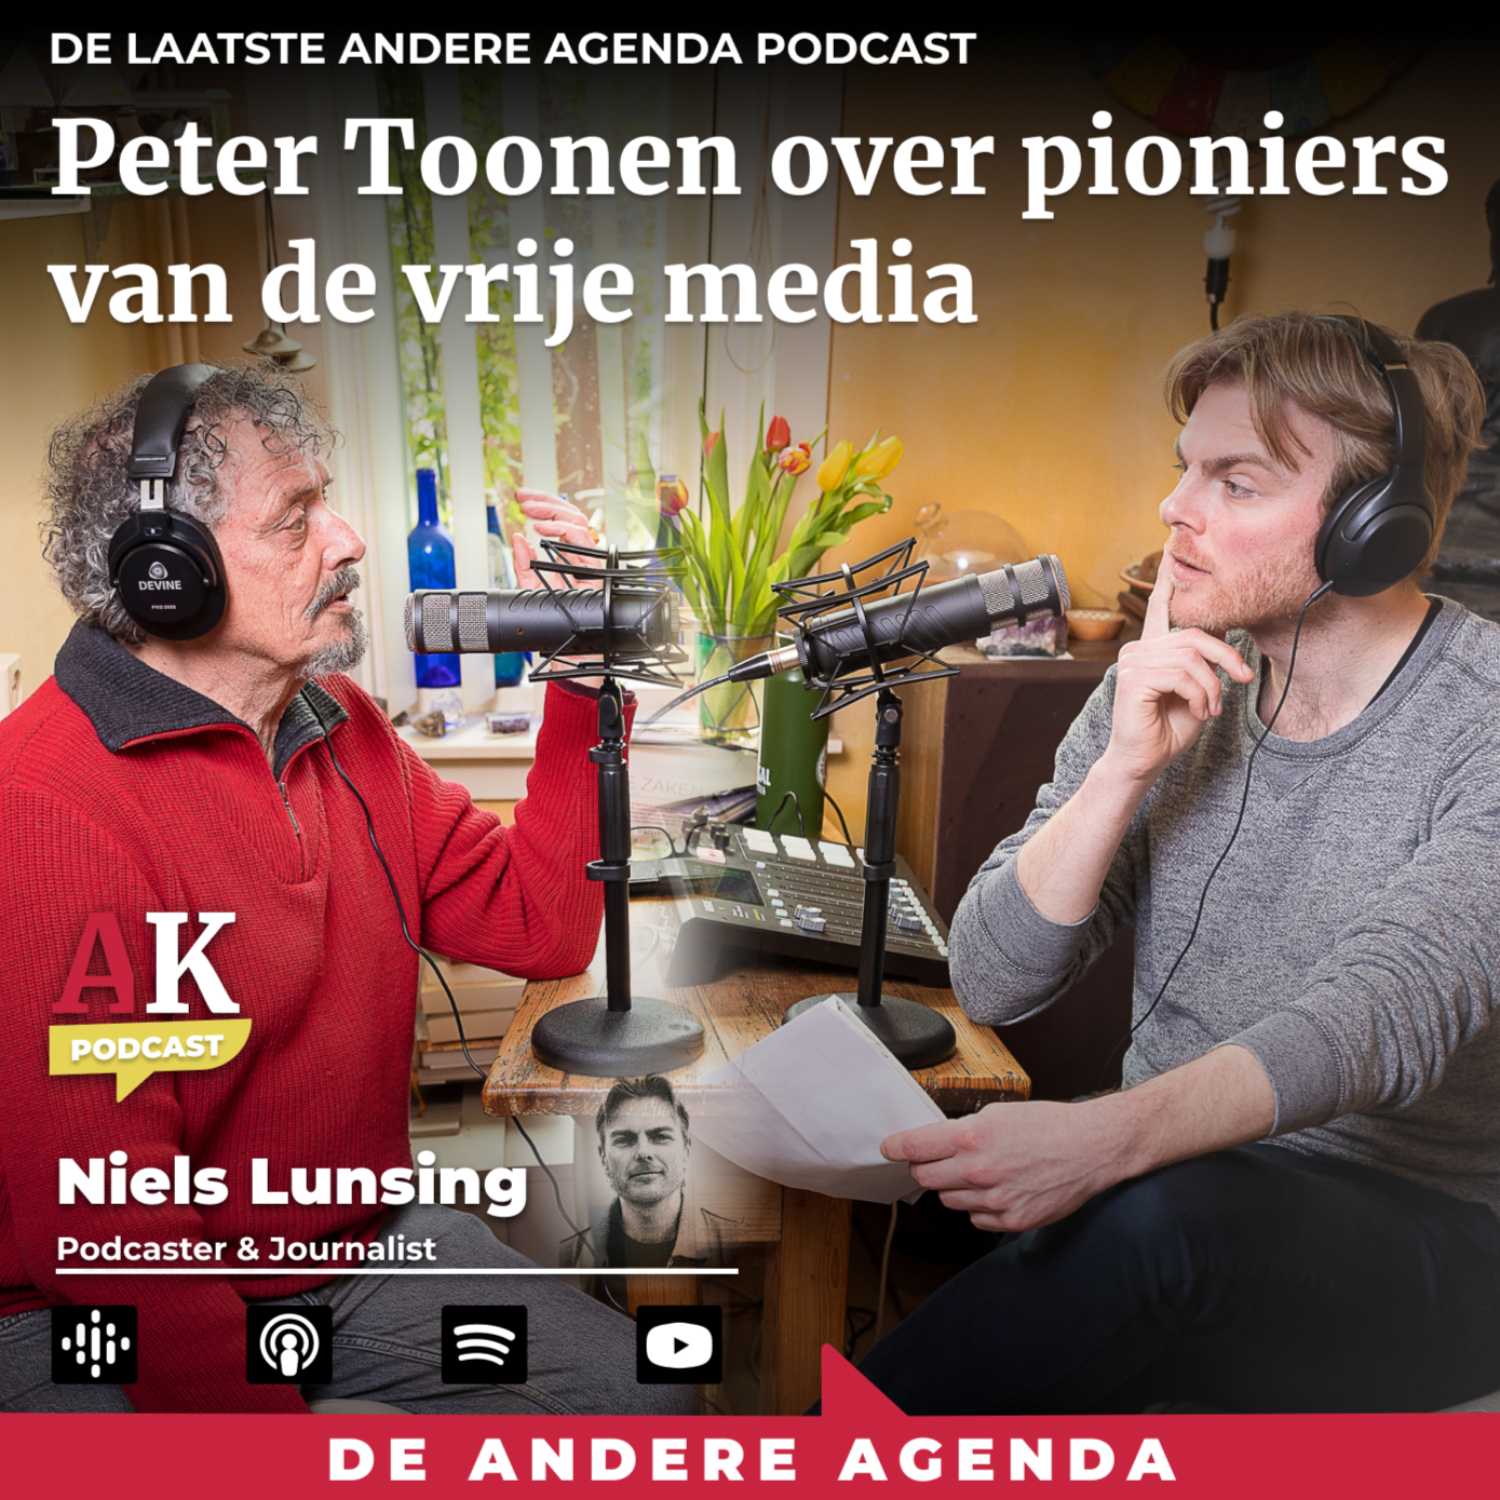 Peter Toonen over pioniers in de alternatieve media |  De Andere Agenda Podcast